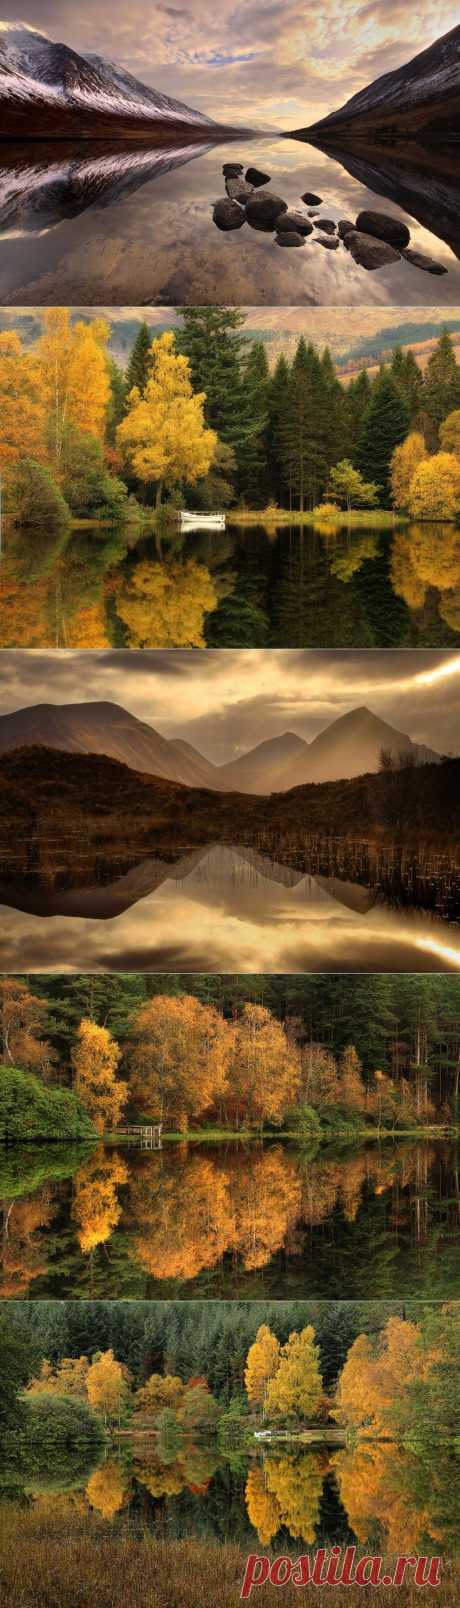 Отражение мира в природных зеркалах от Роджера Меррифилда | Newpix.ru - позитивный интернет-журнал